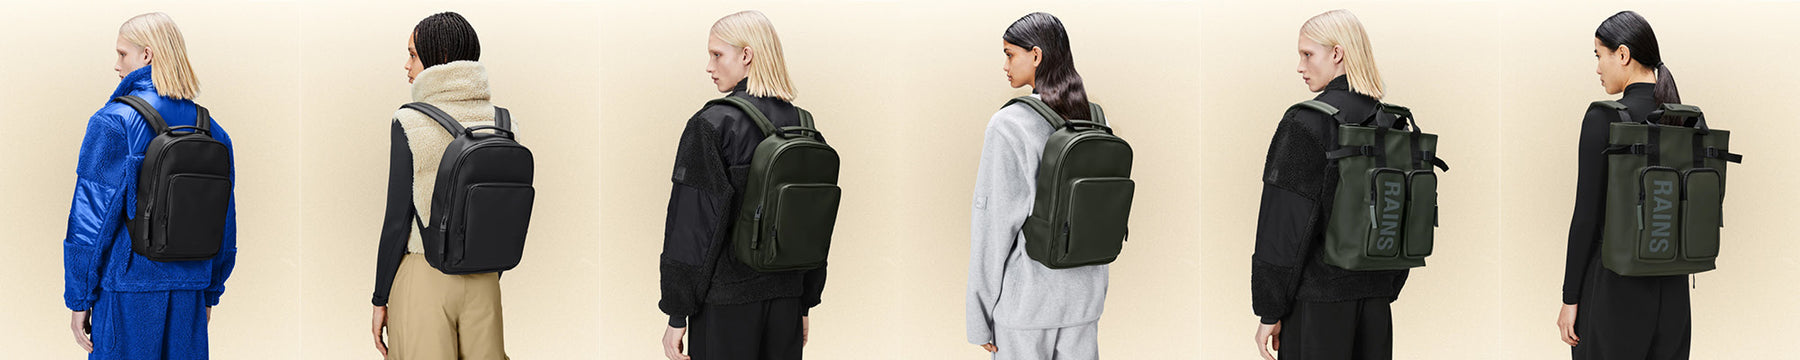 Woman » Bags » Backpacks